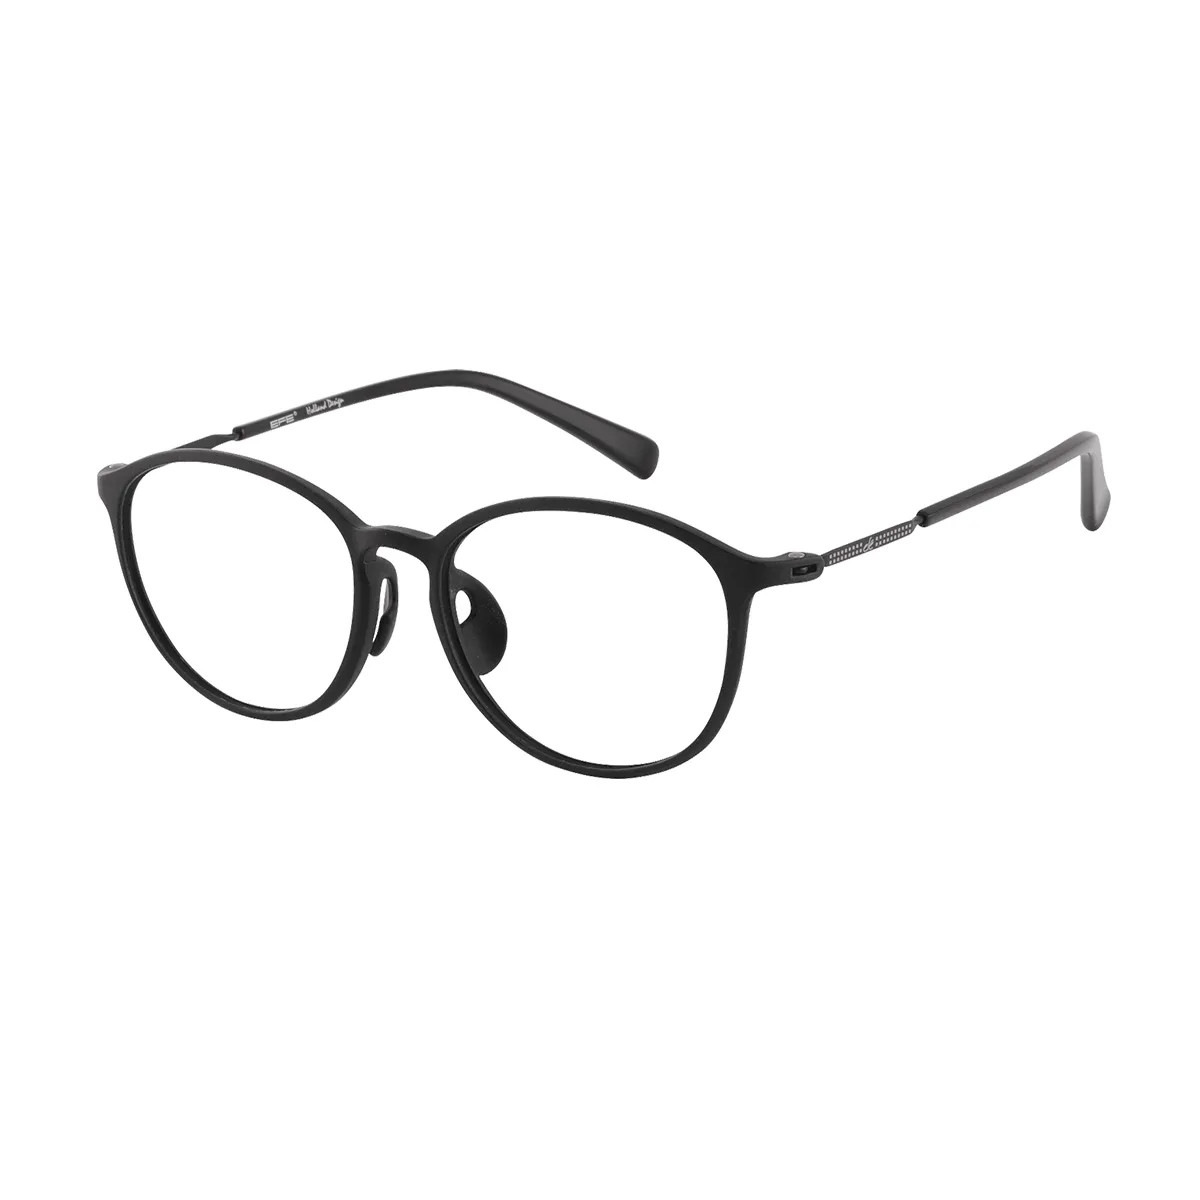 Fashion Oval Black Glasses for Men & Women